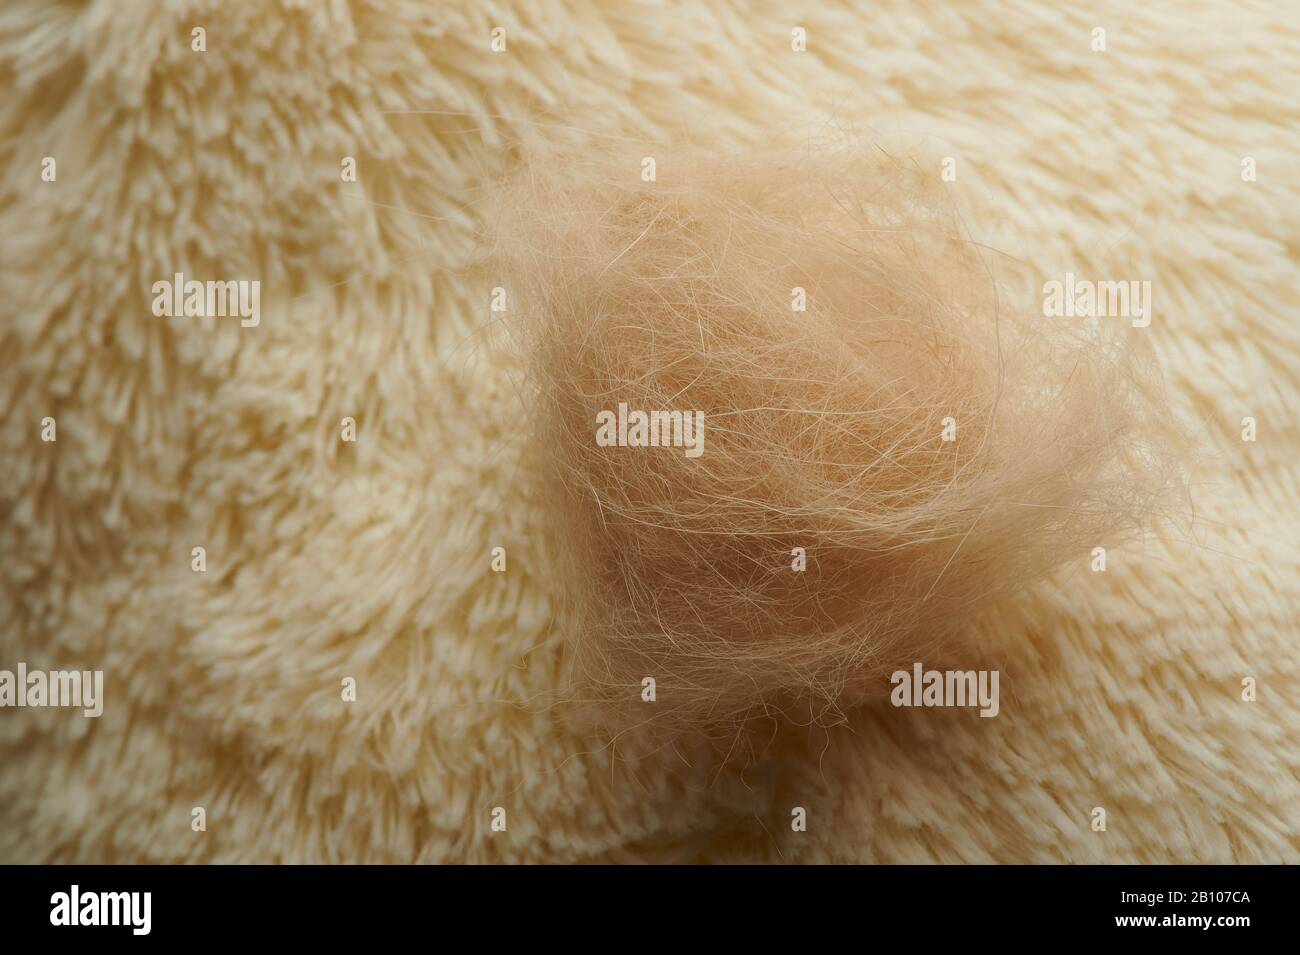 Pet shedding hair theme. Brown animal hair on carpet Stock Photo